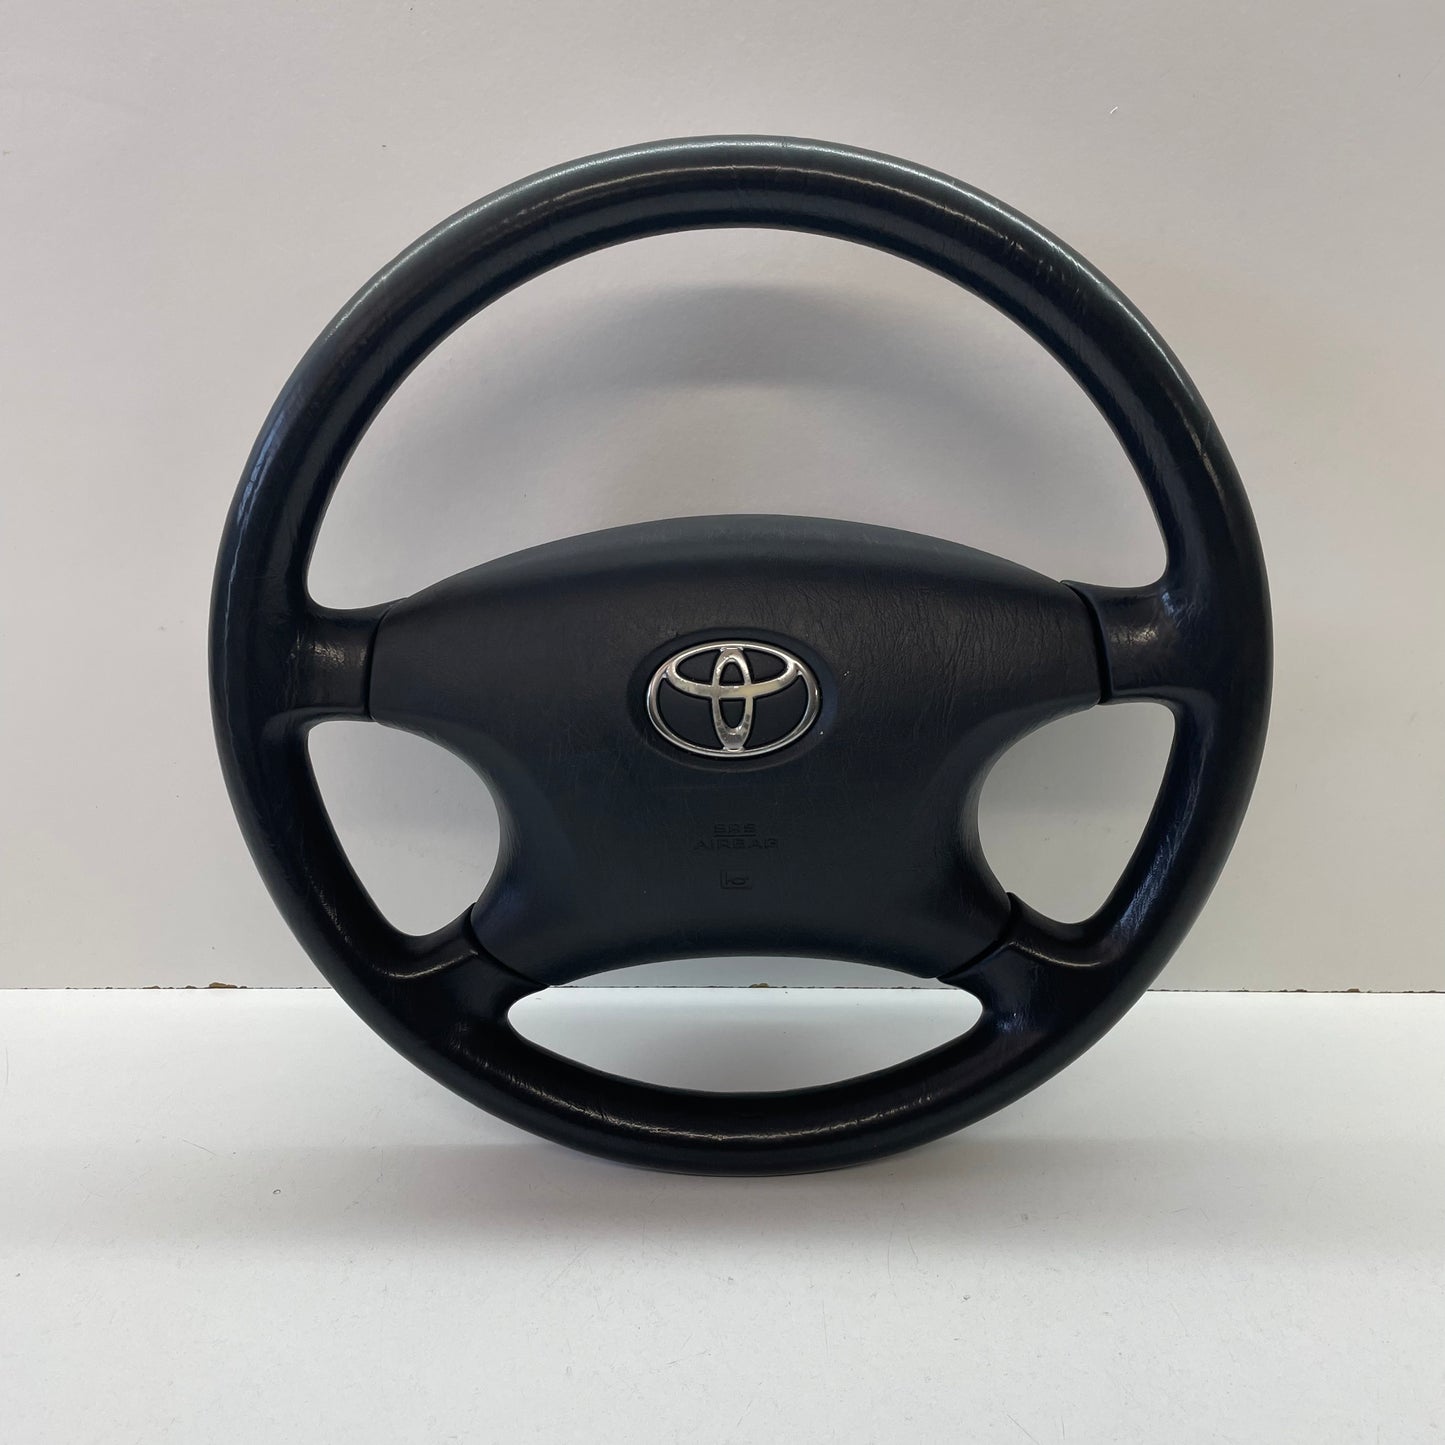 Toyota Corolla Steering Wheel ZZE122R 2001 2002 2003 2004 2005 2006 2007